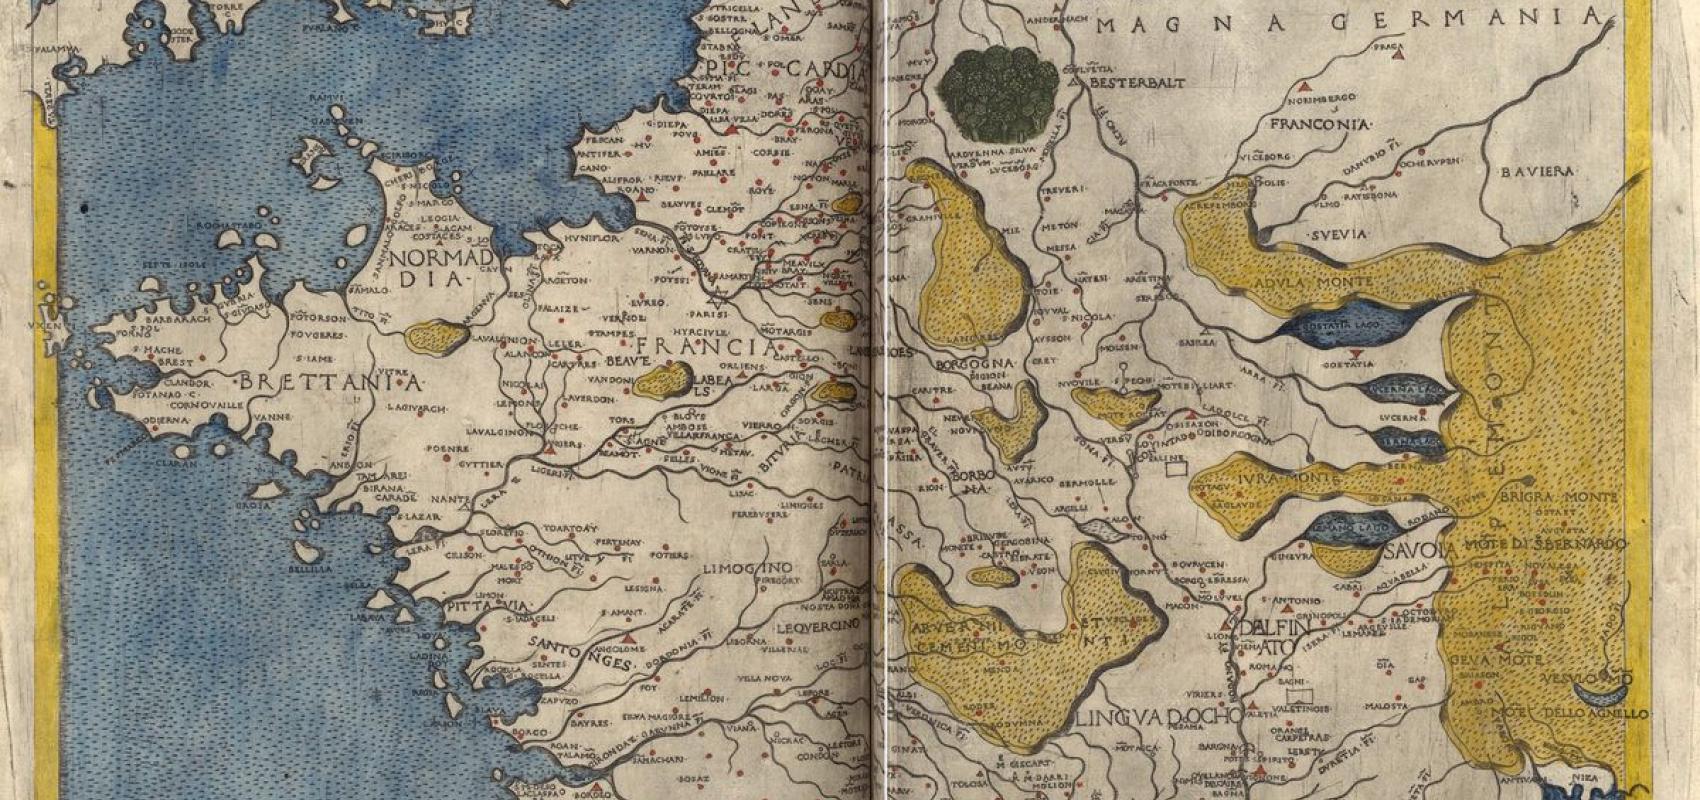 Planche de la « Geographia » en vers de Francesco Berlinghieri -  - BnF, département des Carte et plans